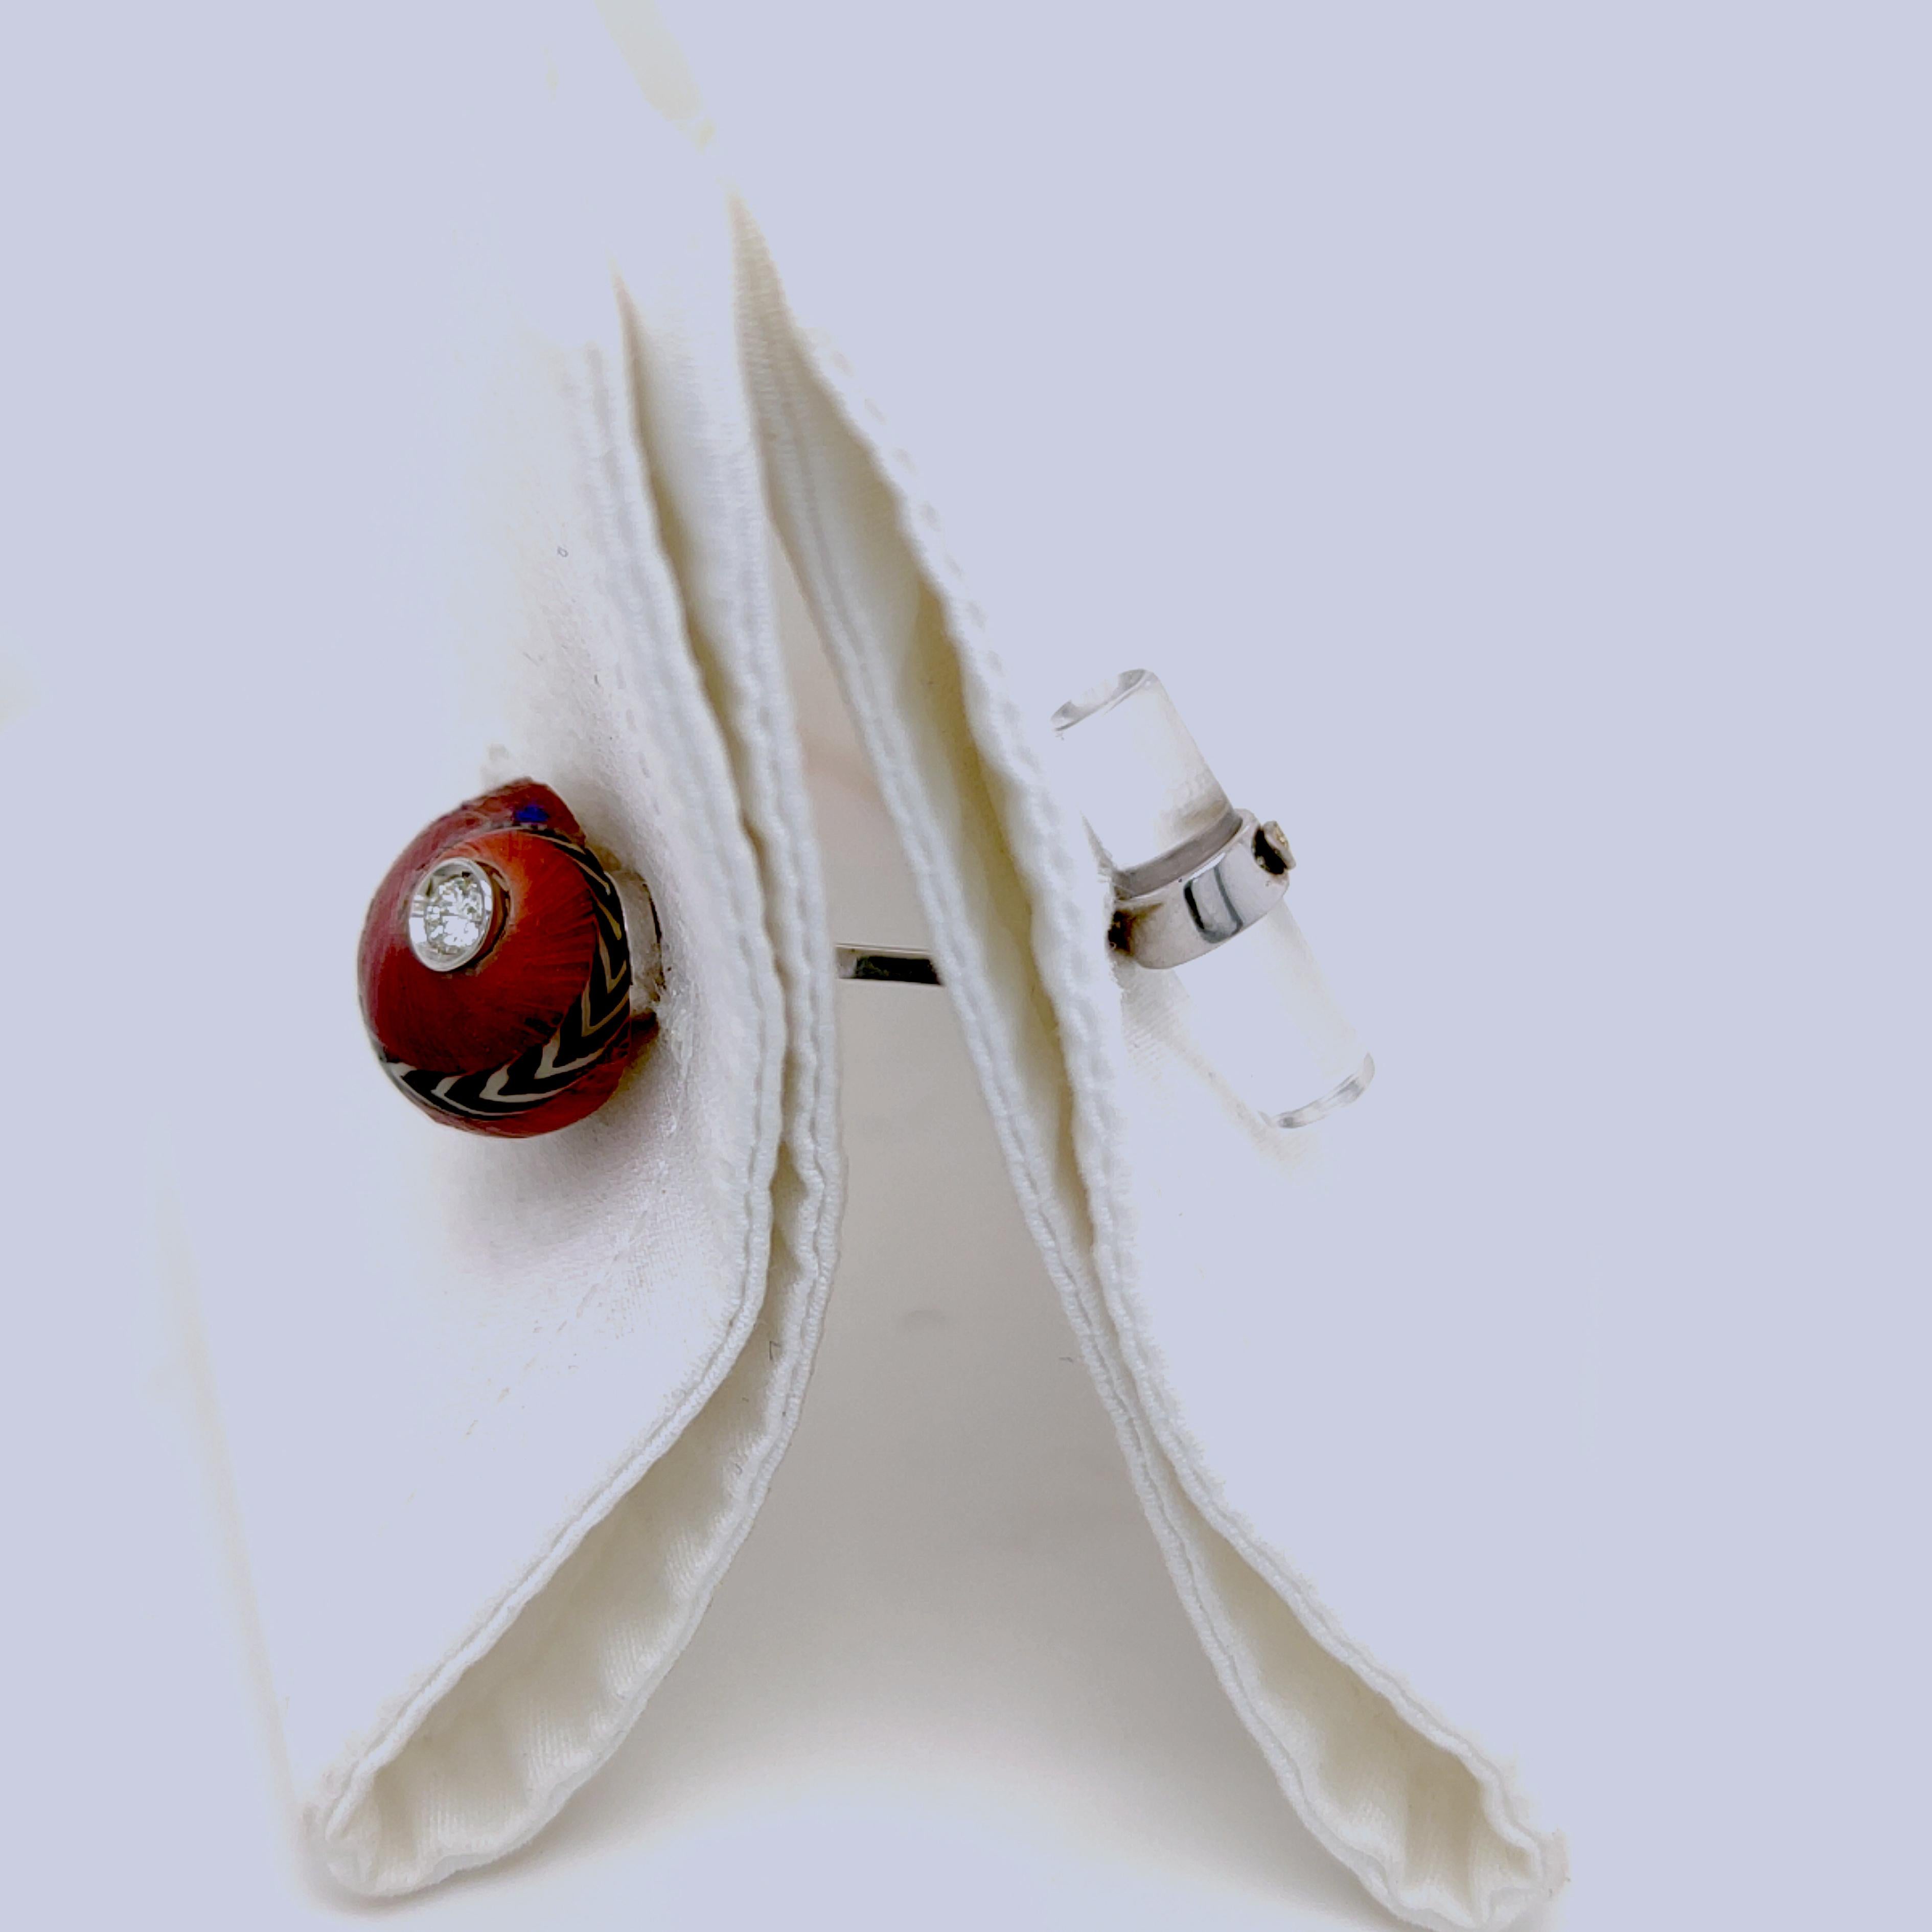 Une paire de boutons de manchette unique en son genre présentant un diamant blanc de qualité supérieure taillé en brillant dans un coquillage de mer rouge, noir et blanc en forme de nacre reconstituée, émaillé à la main, sur une monture en or blanc.